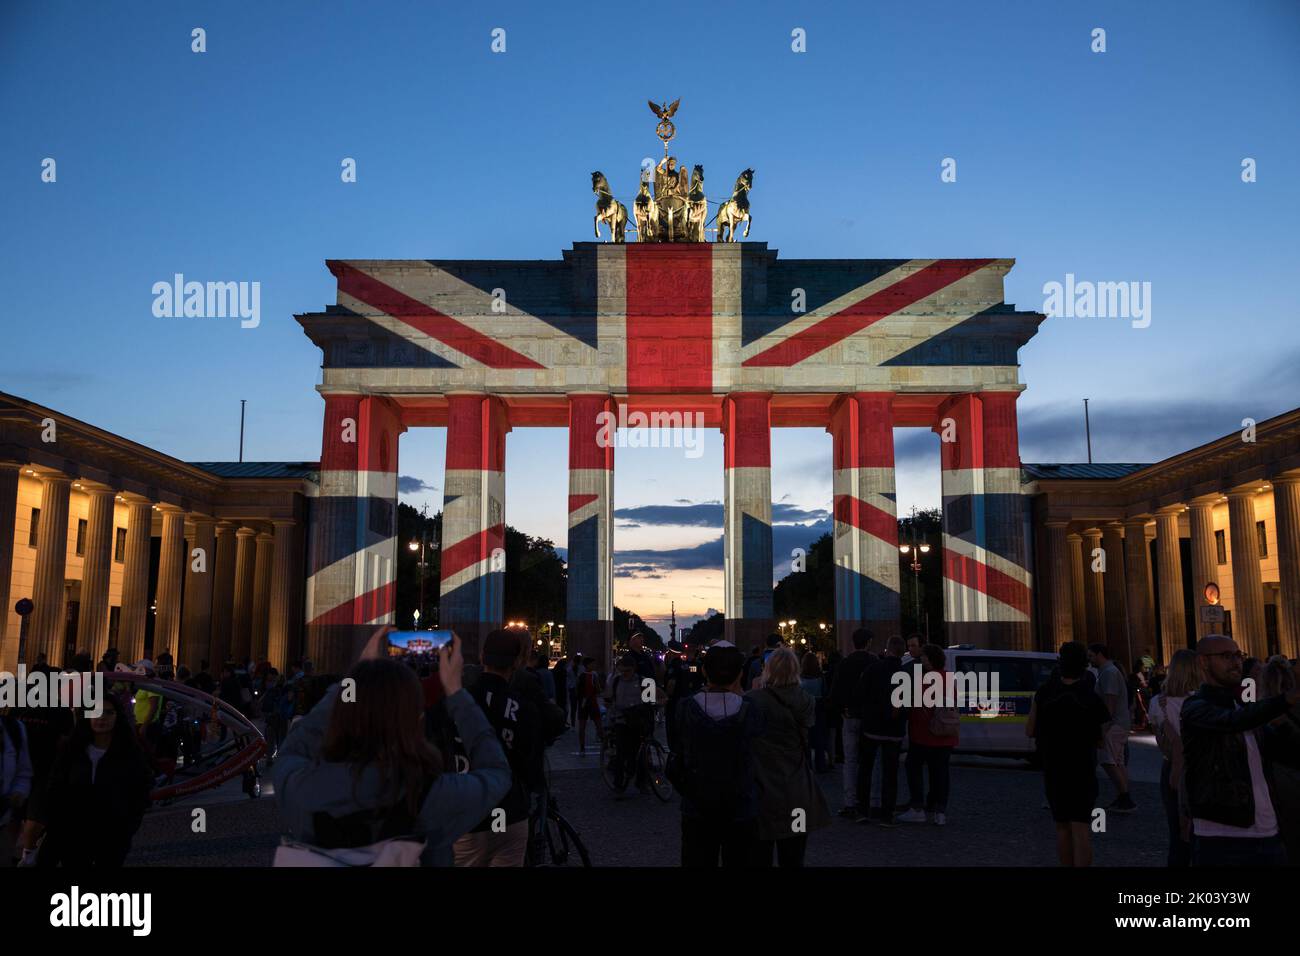 Nella capitale tedesca di Berlino, la porta di Brandeburgo è stata illuminata con la bandiera dell'Unione la sera del 9 settembre 2022, in lutto della regina Elisabetta II Molte persone si sono riunite a Pariser Platz per esprimere la loro solidarietà. La regina Elisabetta II aveva guidato attraverso la porta di Brandeburgo nel 2015 con il principe Filippo nella sua limousine dopo aver detto Arrivederci a Pariser Platz. La regina Elisabetta II arrivò per la prima volta a Berlino, che era ancora divisa all'epoca, nel 1965, come primo capo di stato britannico dopo la seconda guerra mondiale, dove fu accolta da un pubblico di almeno un milione di persone. A quel tempo, lei no Foto Stock